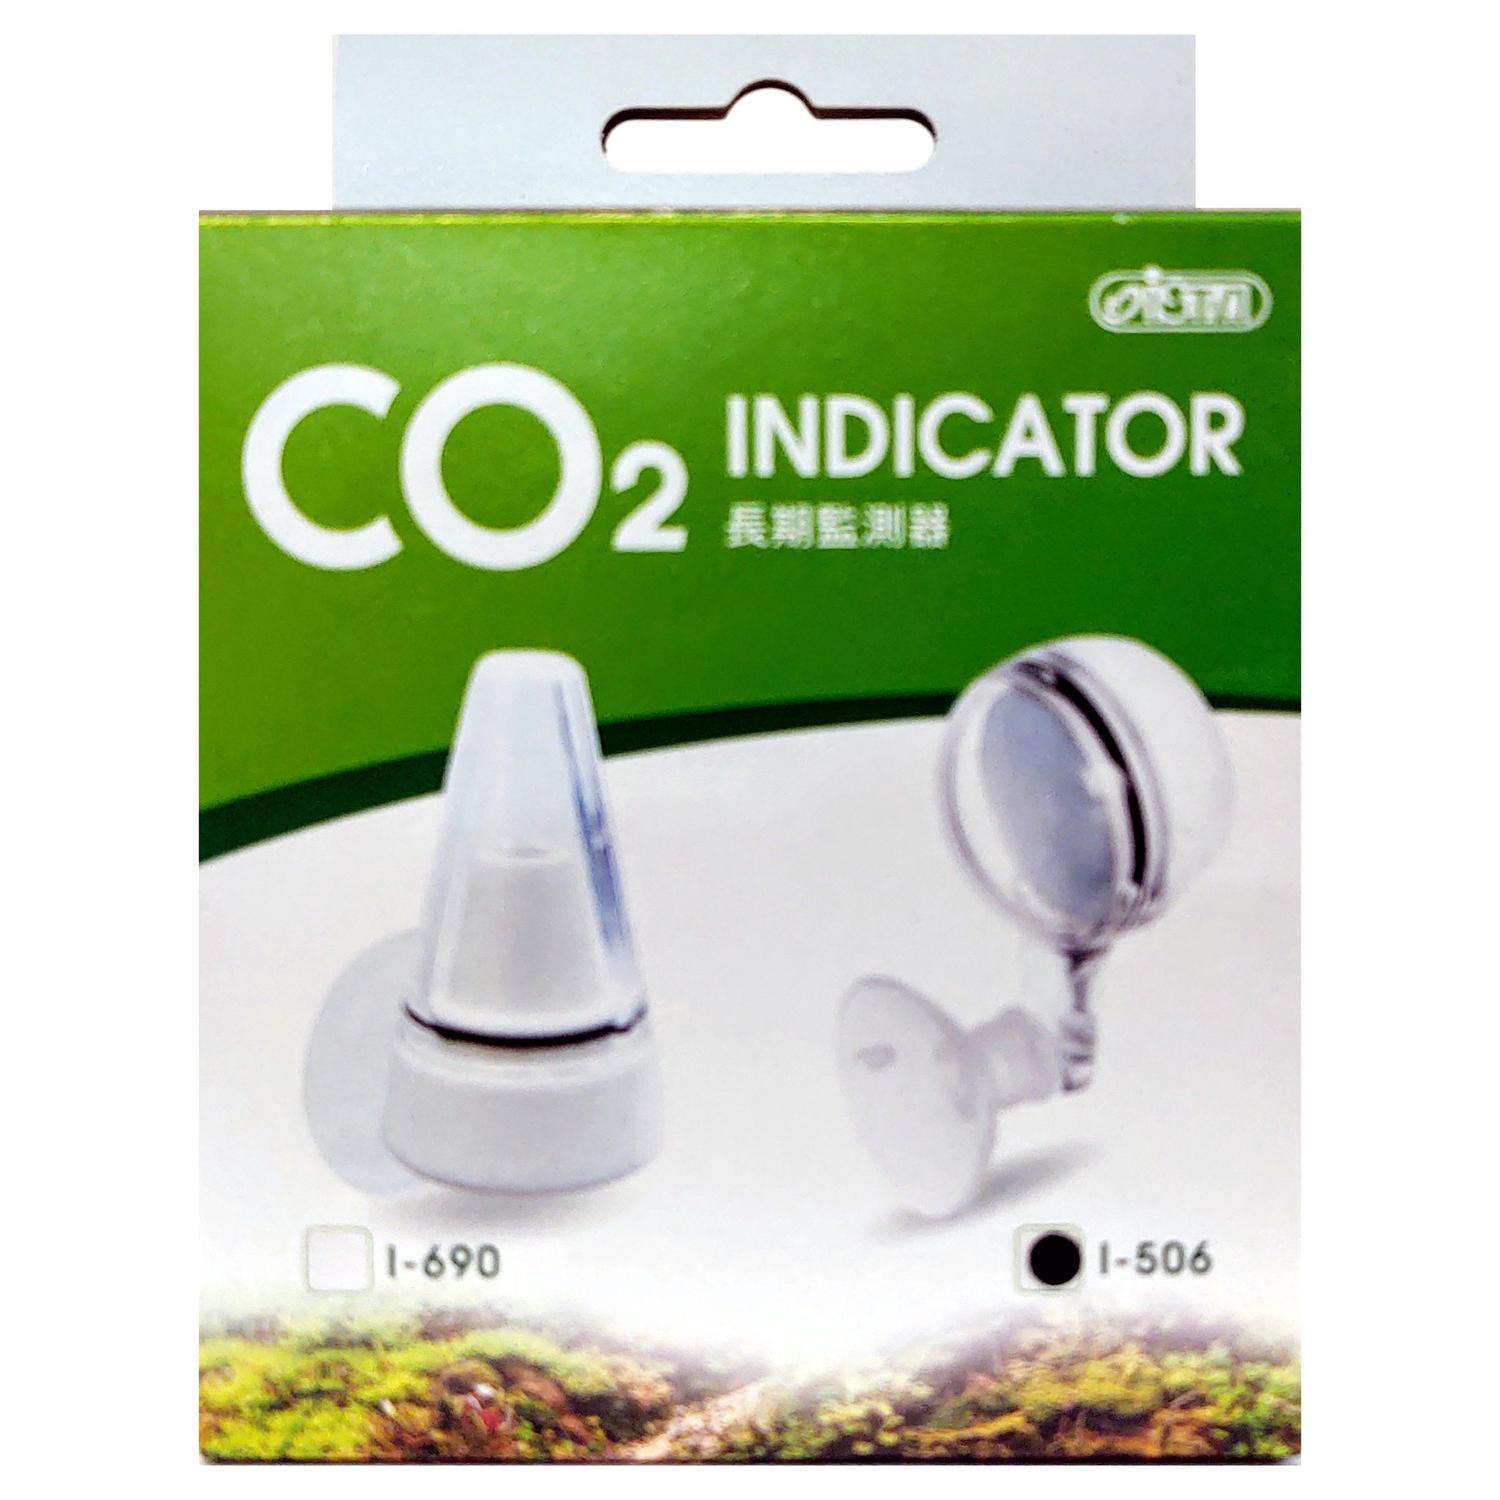 Monitor Co2 Indicator Ista I-506 + Solução